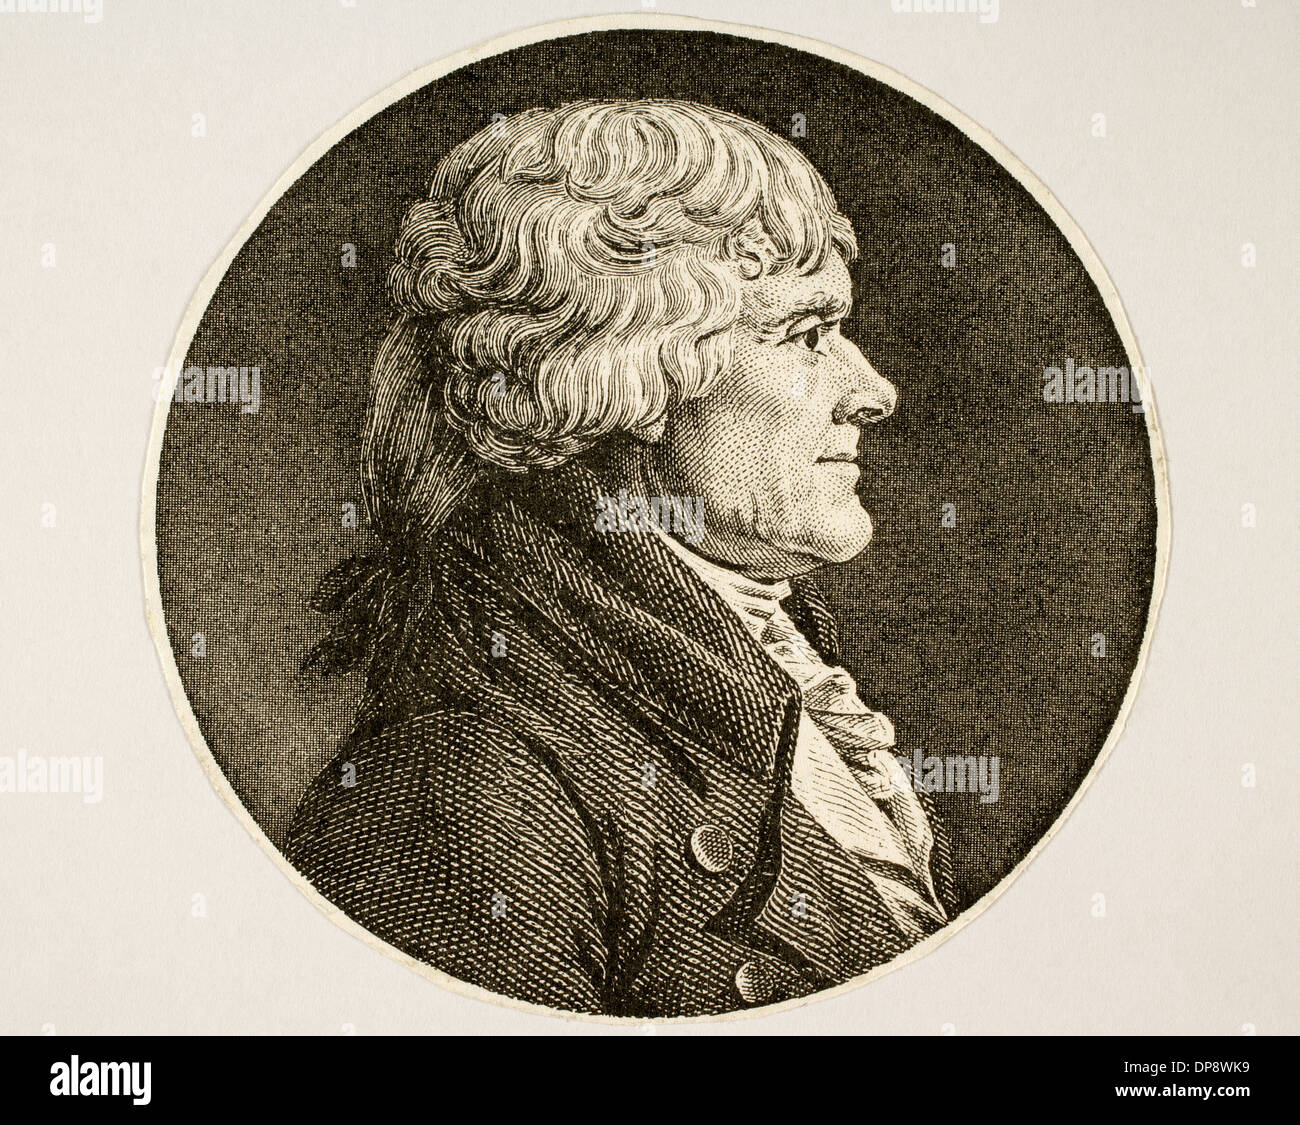 Thomas Jefferson (1743-1826). 3. Präsident und einer der Gründerväter der Vereinigten Staaten. Gravur. Stockfoto